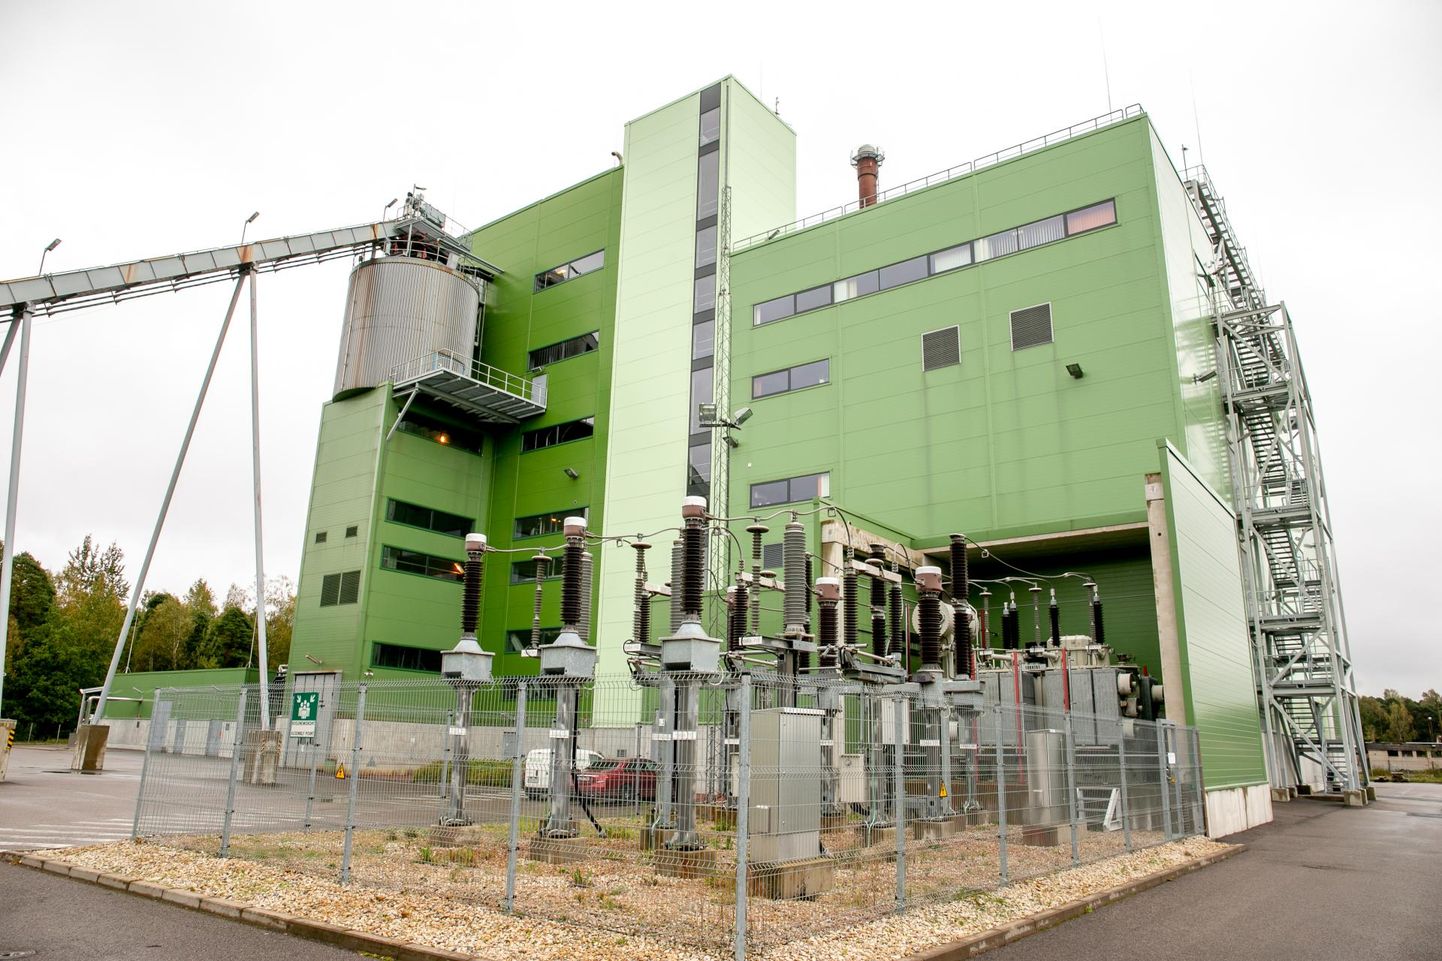 Fortumi Pärnu koostootmisjaam suudaks ilmselt varustada Pärnu elutähtsaid tarbijaid elektriga, aga riik peab siiski tähtsamaks kriisiolukorras taastada üldelektrivõrk, mitte luua kohapeal elektrisaarekesi.